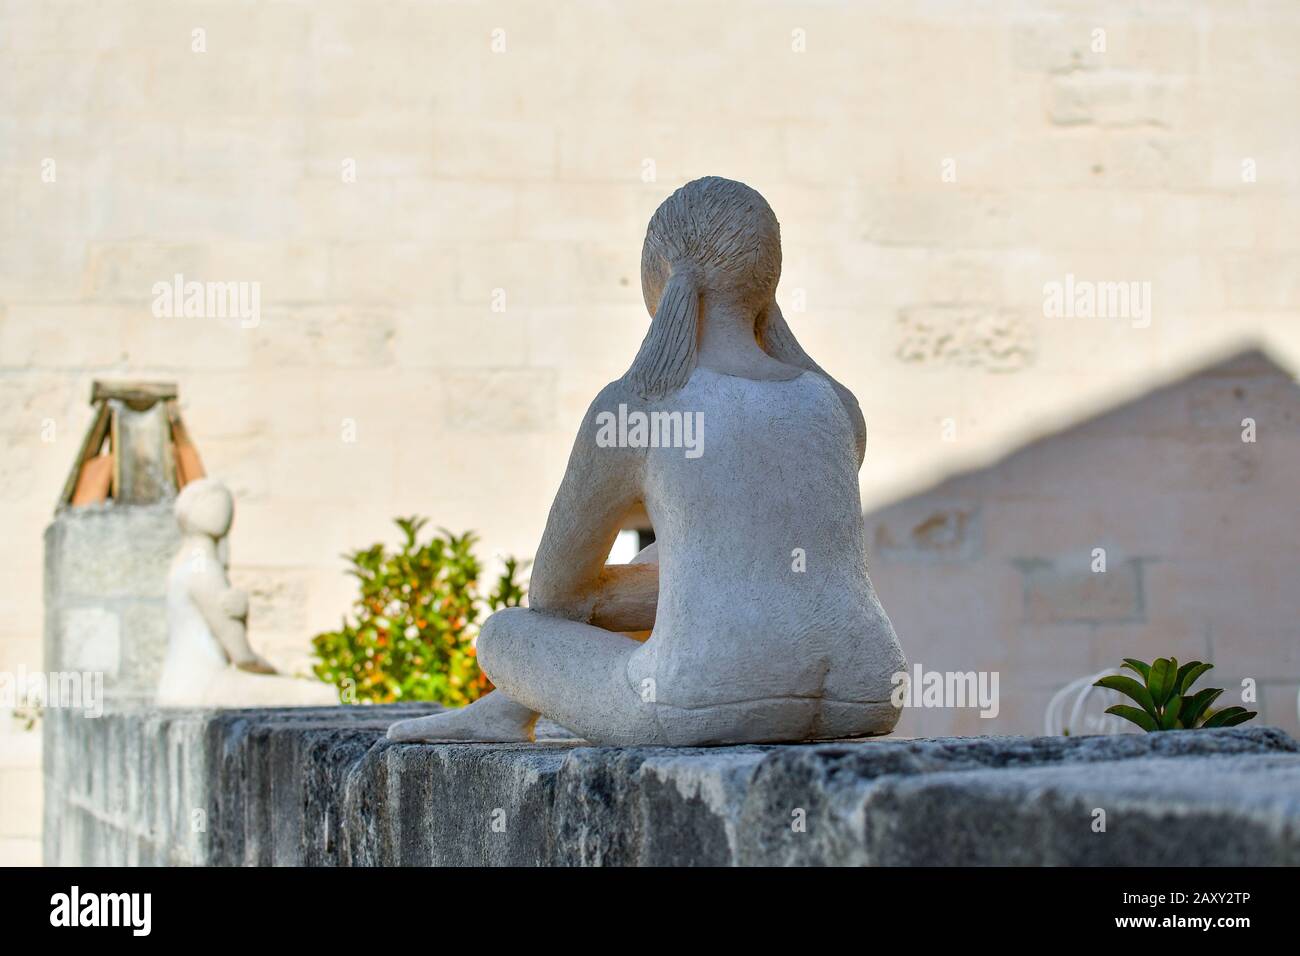 Selektive Fokussierung auf eine moderne Skulptur einer weiblichen Figur, die mit dem Rücken zur Kamera sitzt, während sie einer anderen ähnlichen Skulptur auf einem Dach gegenübersteht. Stockfoto